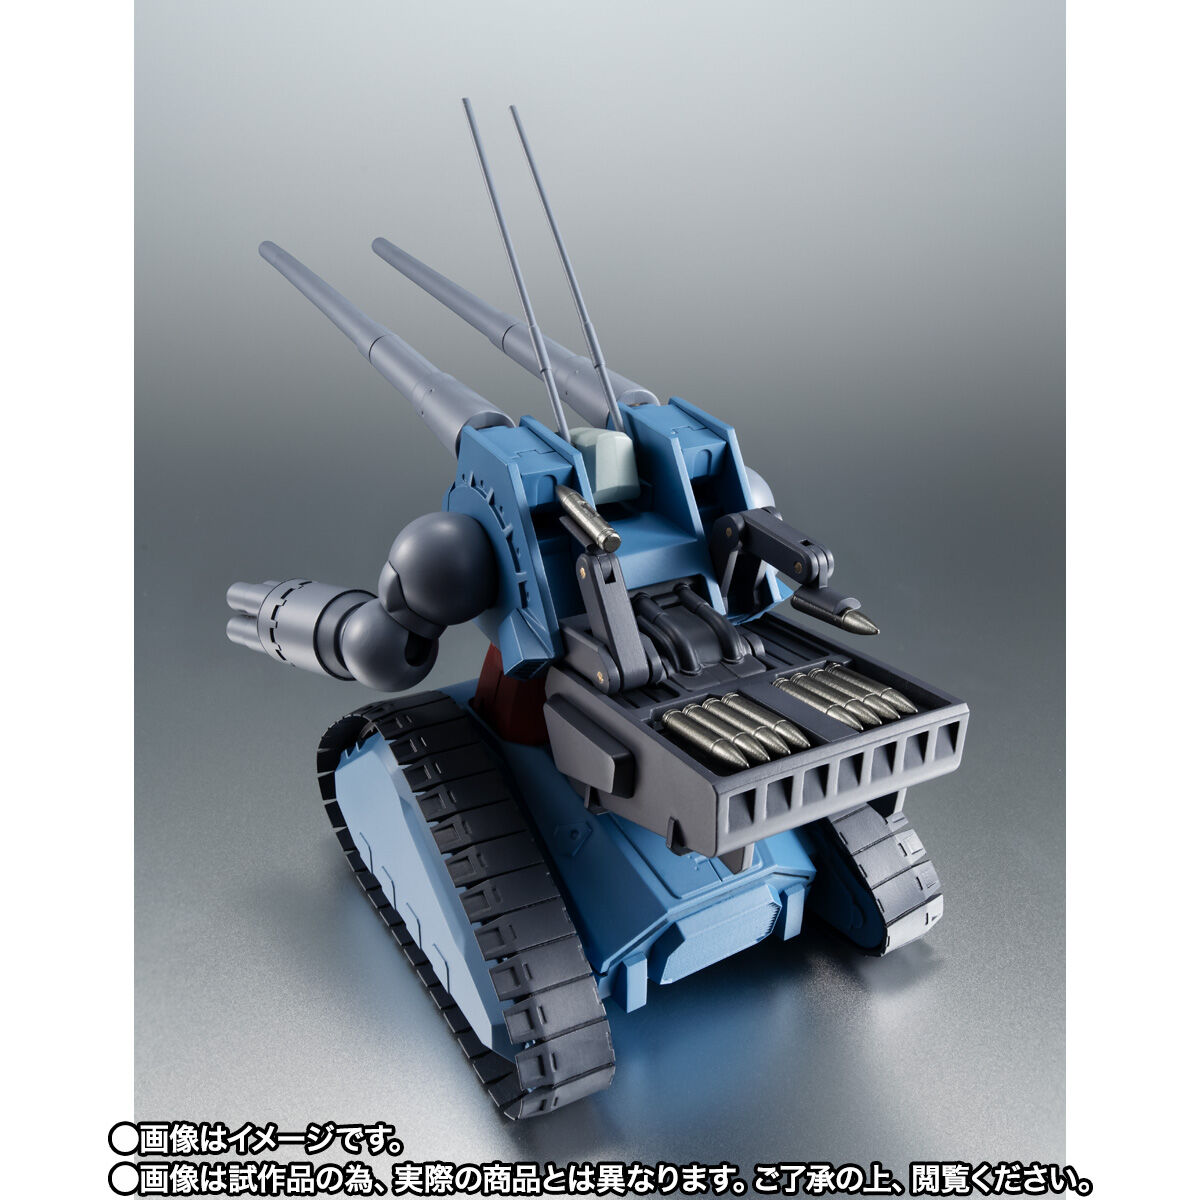 【限定販売】ROBOT魂〈SIDE MS〉『RX-75 量産型ガンタンク ver. A.N.I.M.E.』機動戦士ガンダム 第08MS小隊 可動フィギュア-005